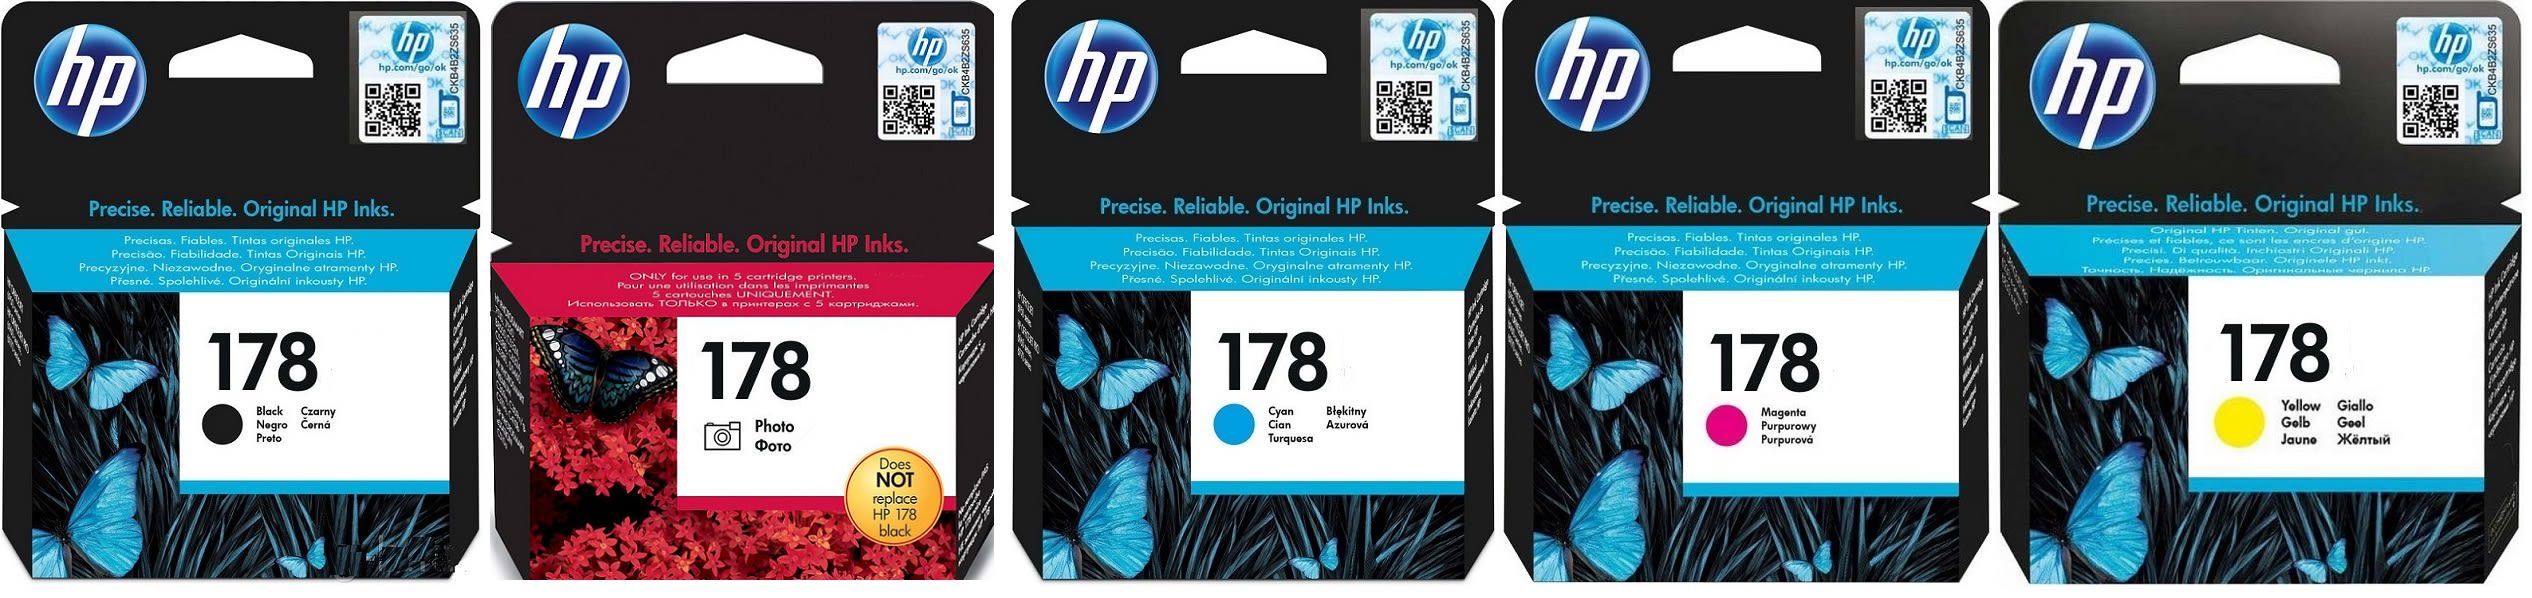 Картриджи hp 178 для HP Photosmart Premium AiO C309g. Купить комплект оригинальных картриджей.